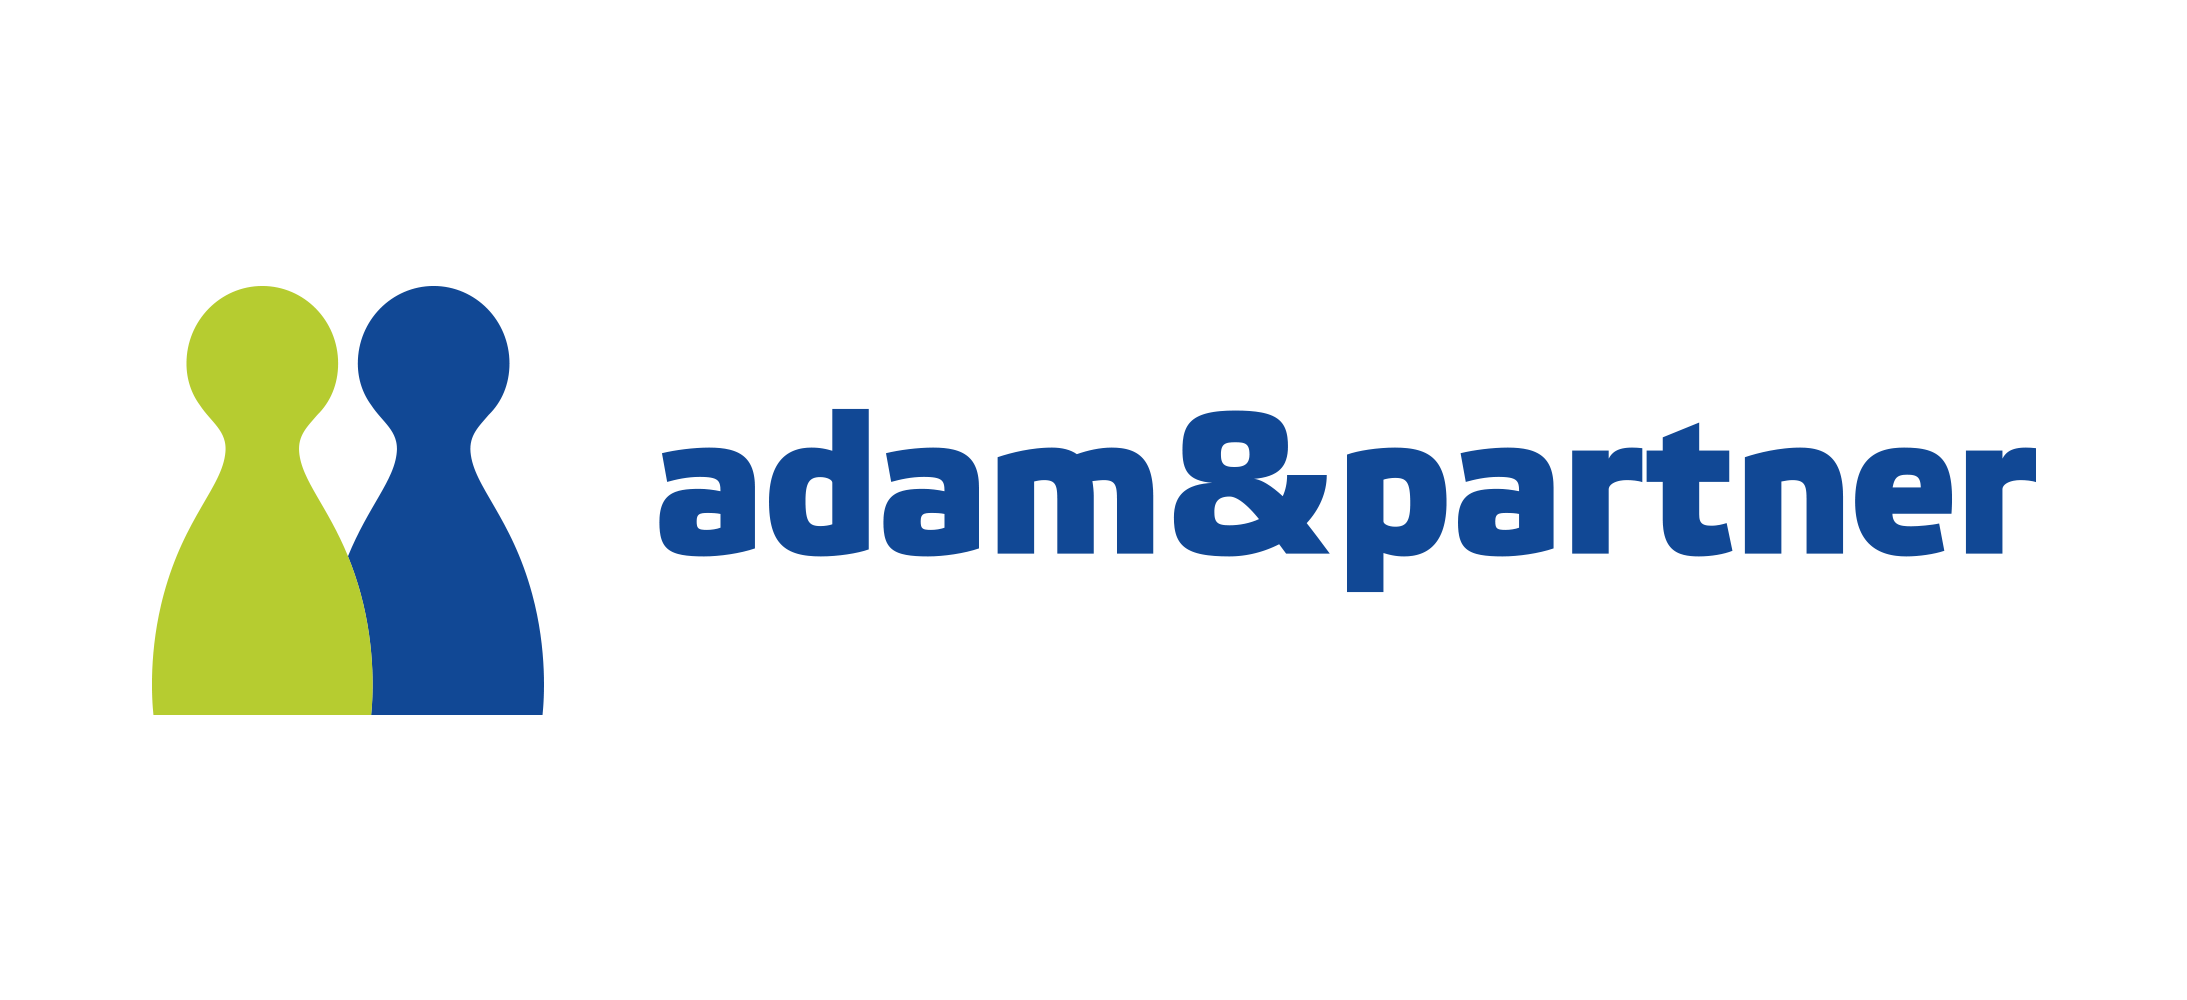 Adam & Partner